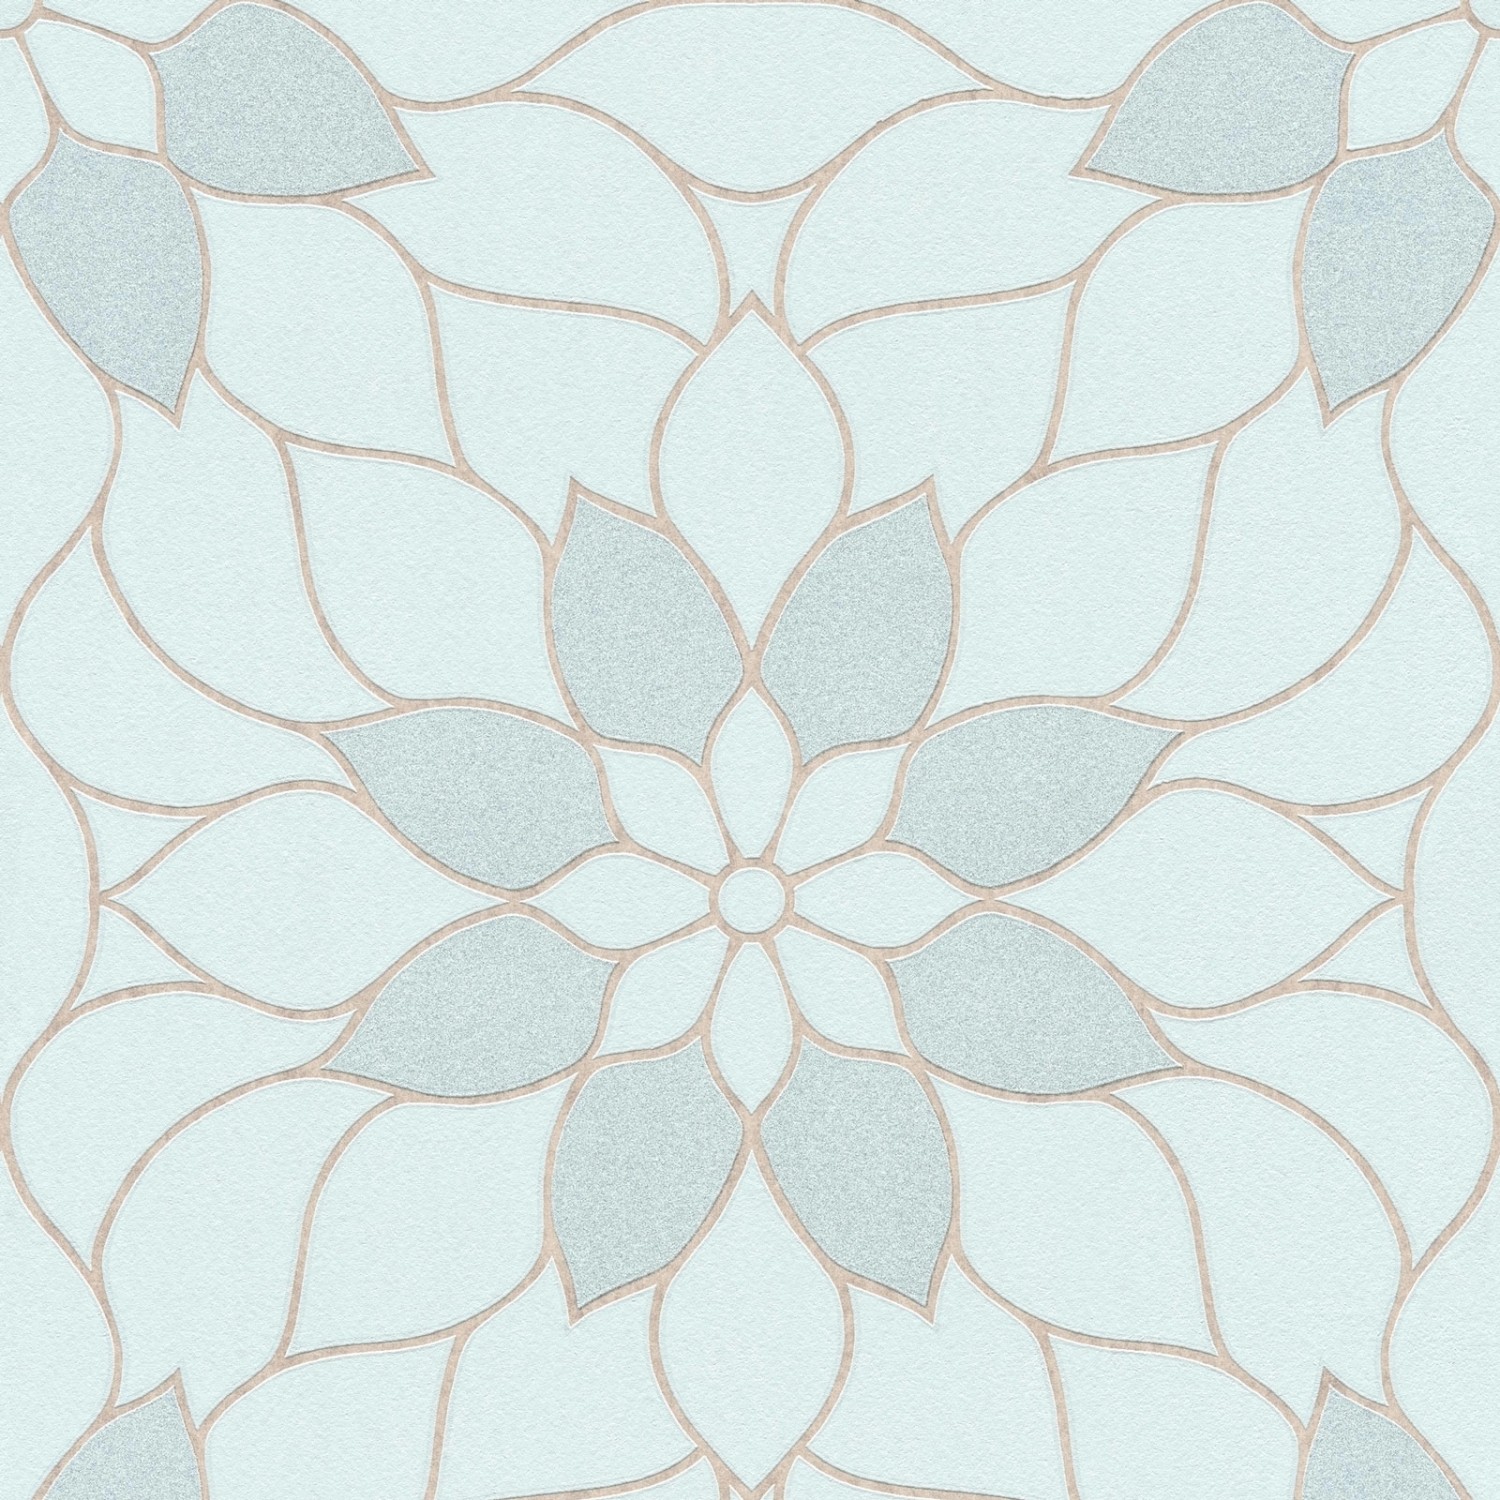 Bricoflor Florale Tapete in Pastellfarben Mosaik Vliestapete Floral mit Glitzer Effekt Vlies Mustertapete mit Blumen in 